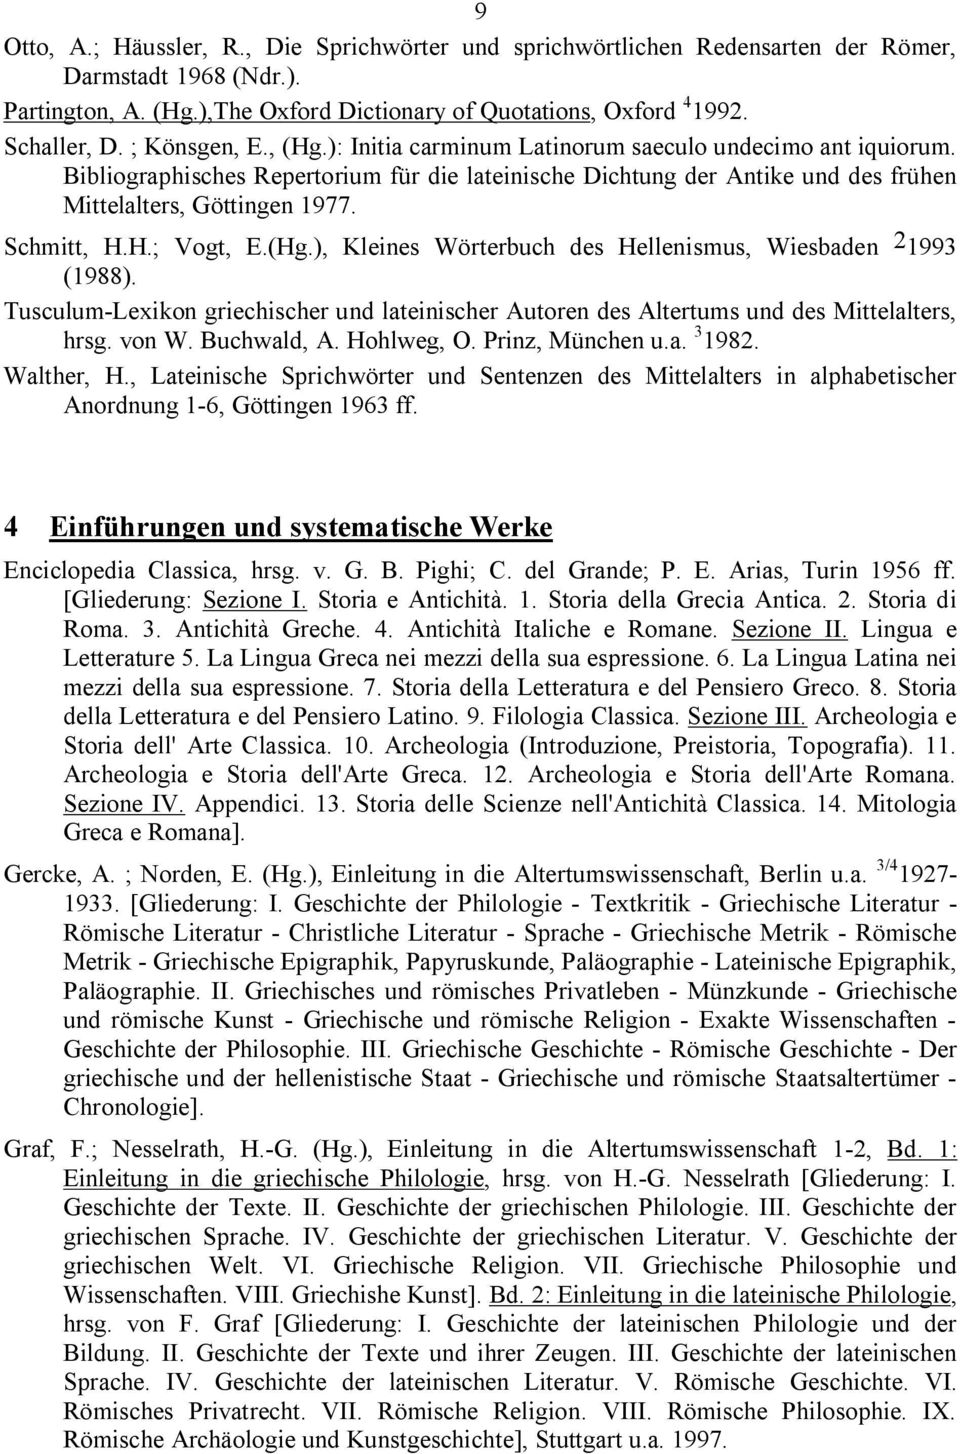 Schmitt, H.H.; Vogt, E.(Hg.), Kleines Wörterbuch des Hellenismus, Wiesbaden 2 1993 (1988). Tusculum-Lexikon griechischer und lateinischer Autoren des Altertums und des Mittelalters, hrsg. von W.